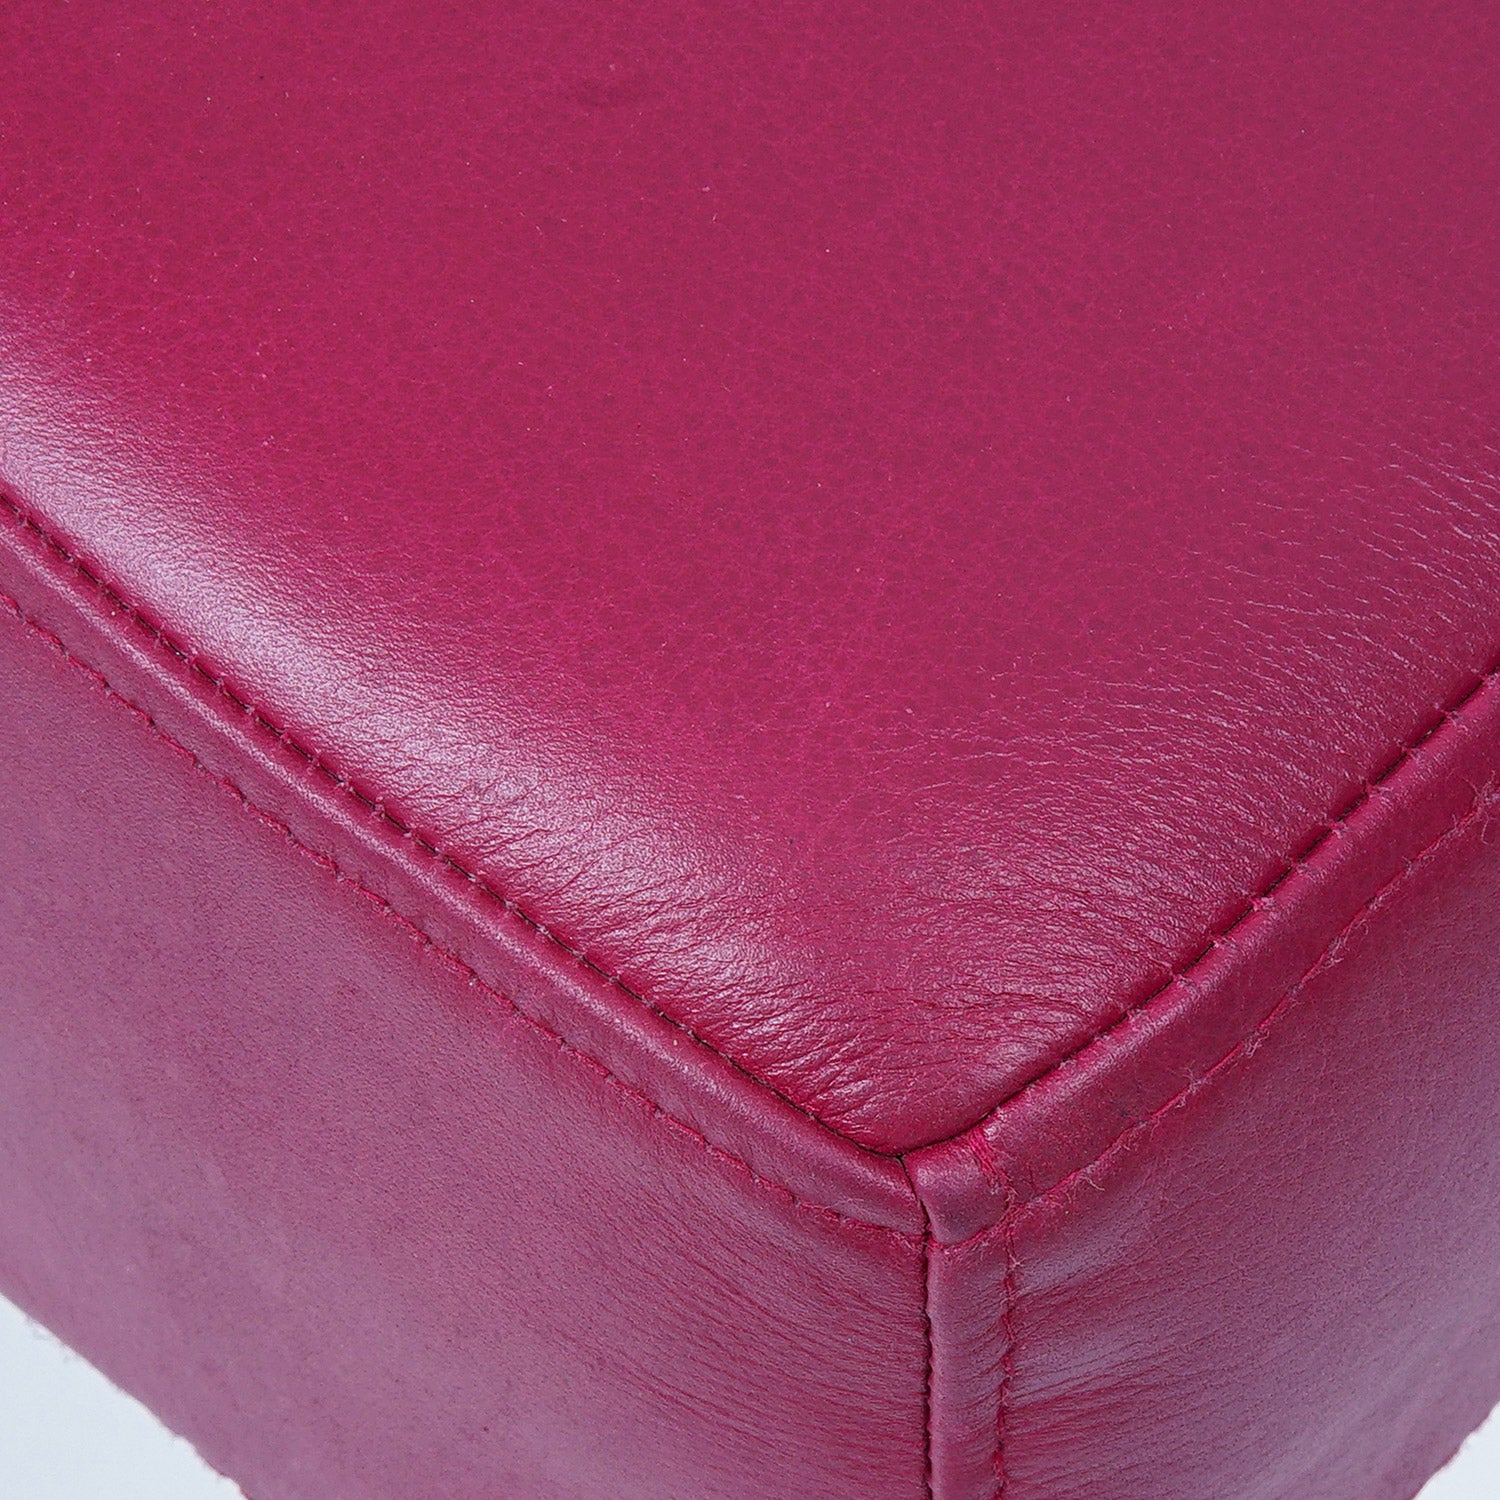 Georgia Ara Antigo Leather Chair Garnet Cushion Close Up